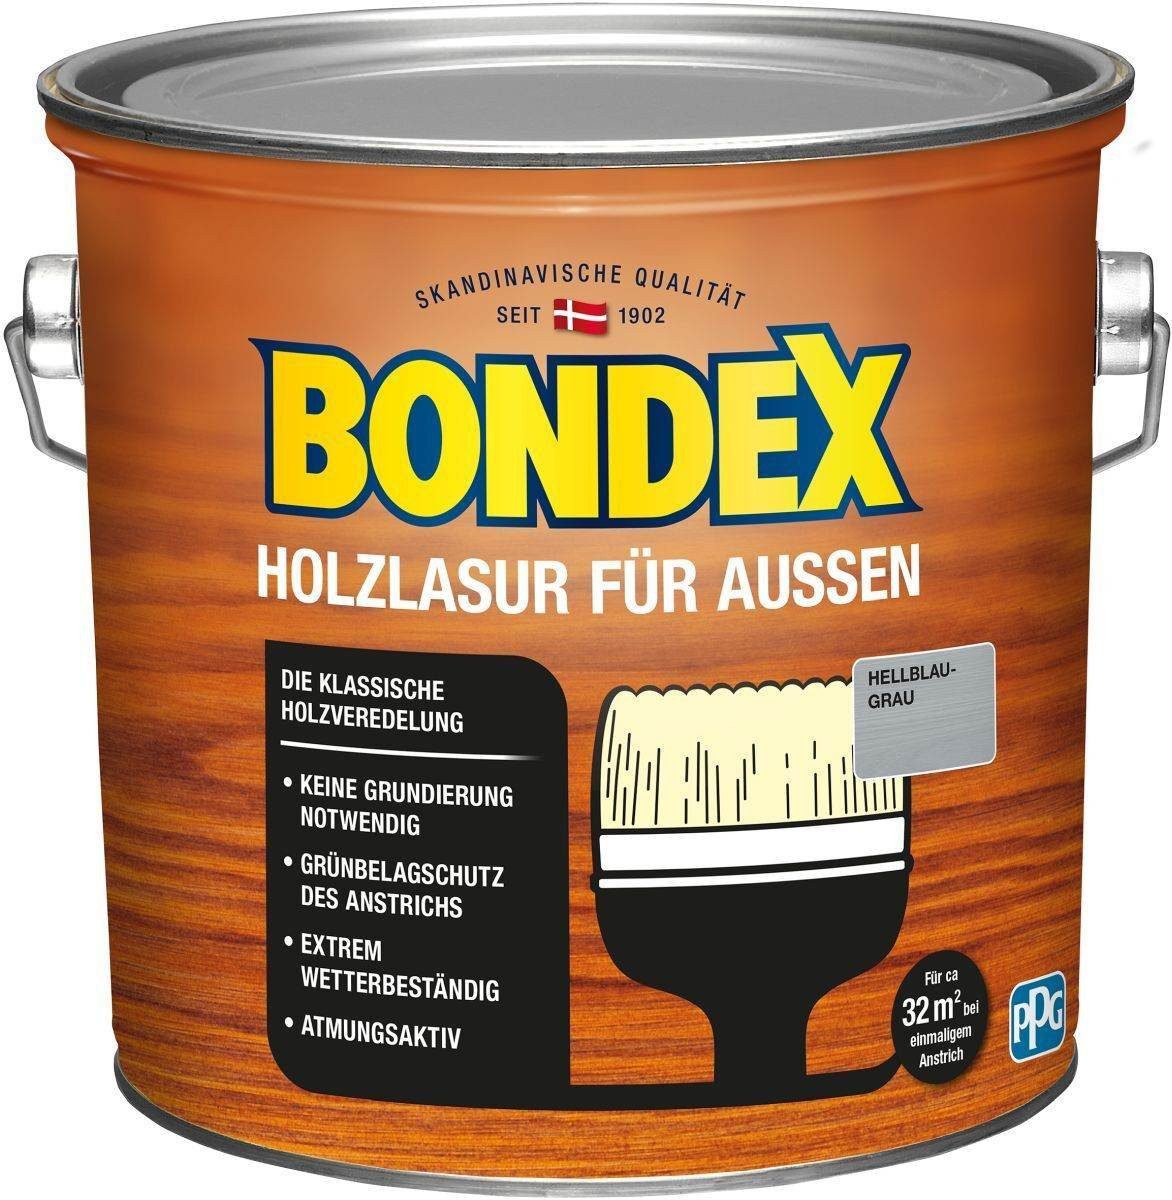 Bondex Holzschutzlasur für Aussen, 2,5 l, TÜV- geprüfte Witterungsbeständigkeit, 16 Farben